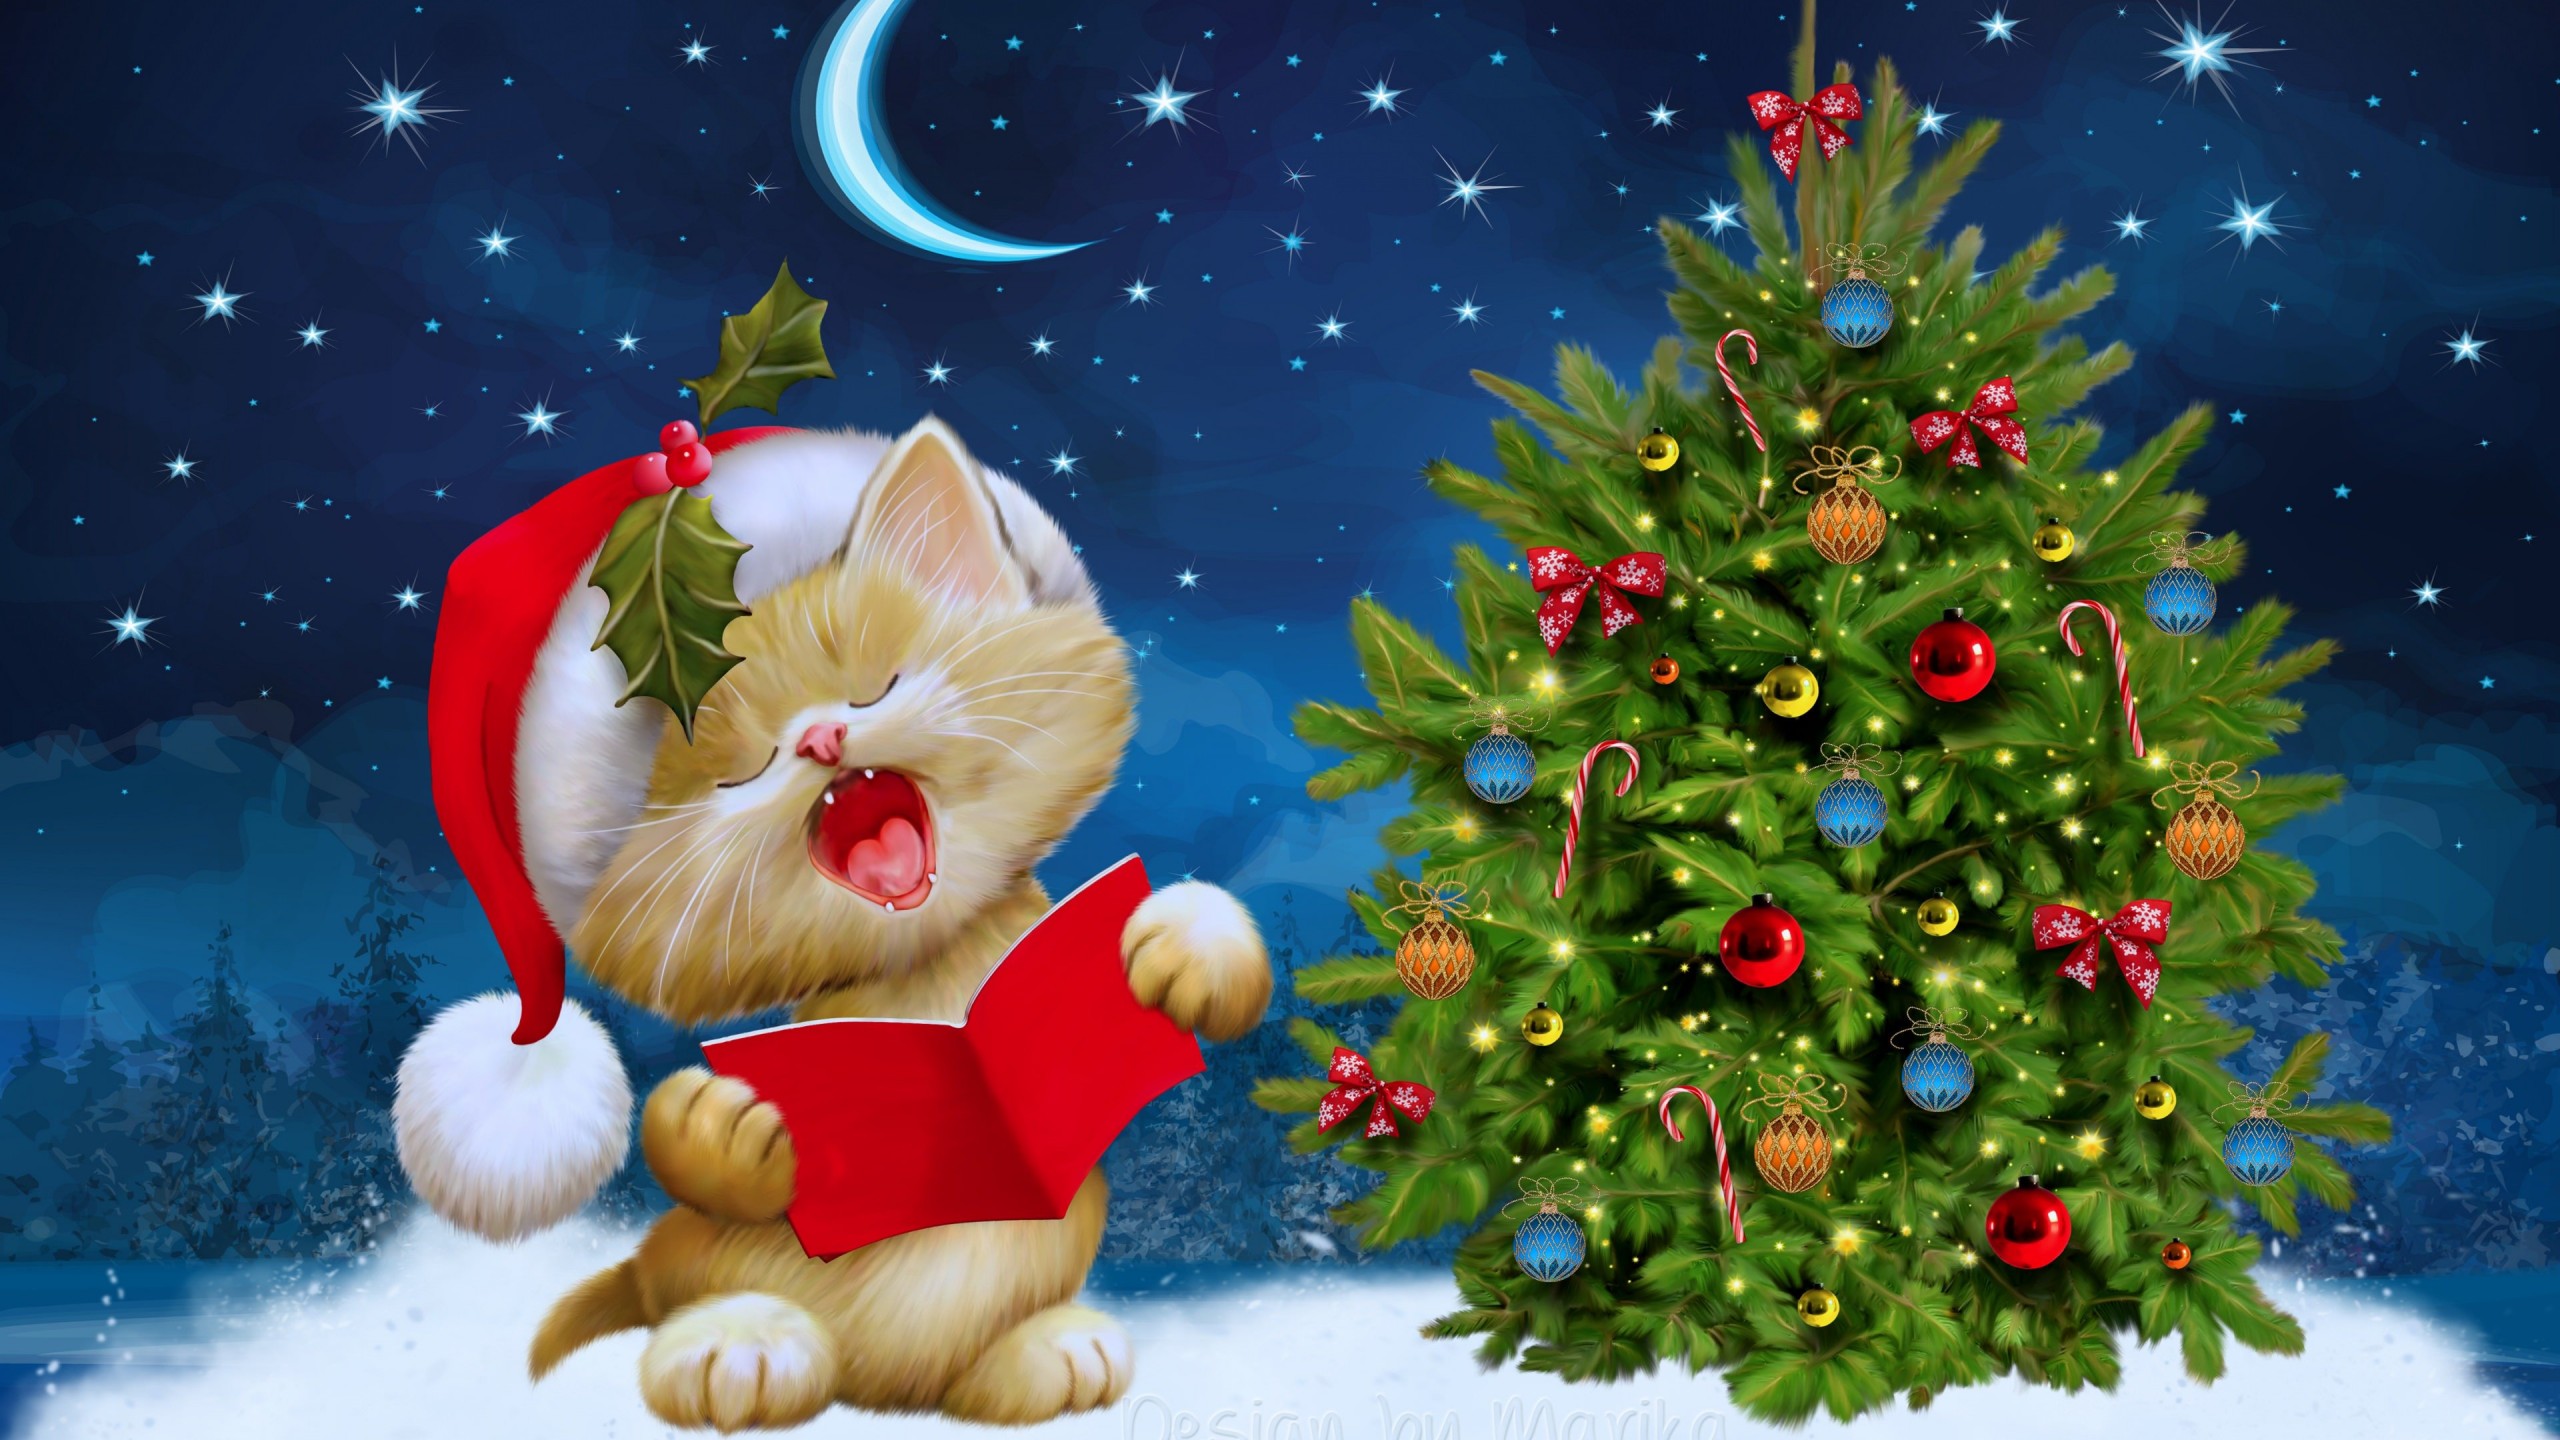 Santa Kitten Singing Christmas Carols Wallpaper for Social Media YouTube Channel Art